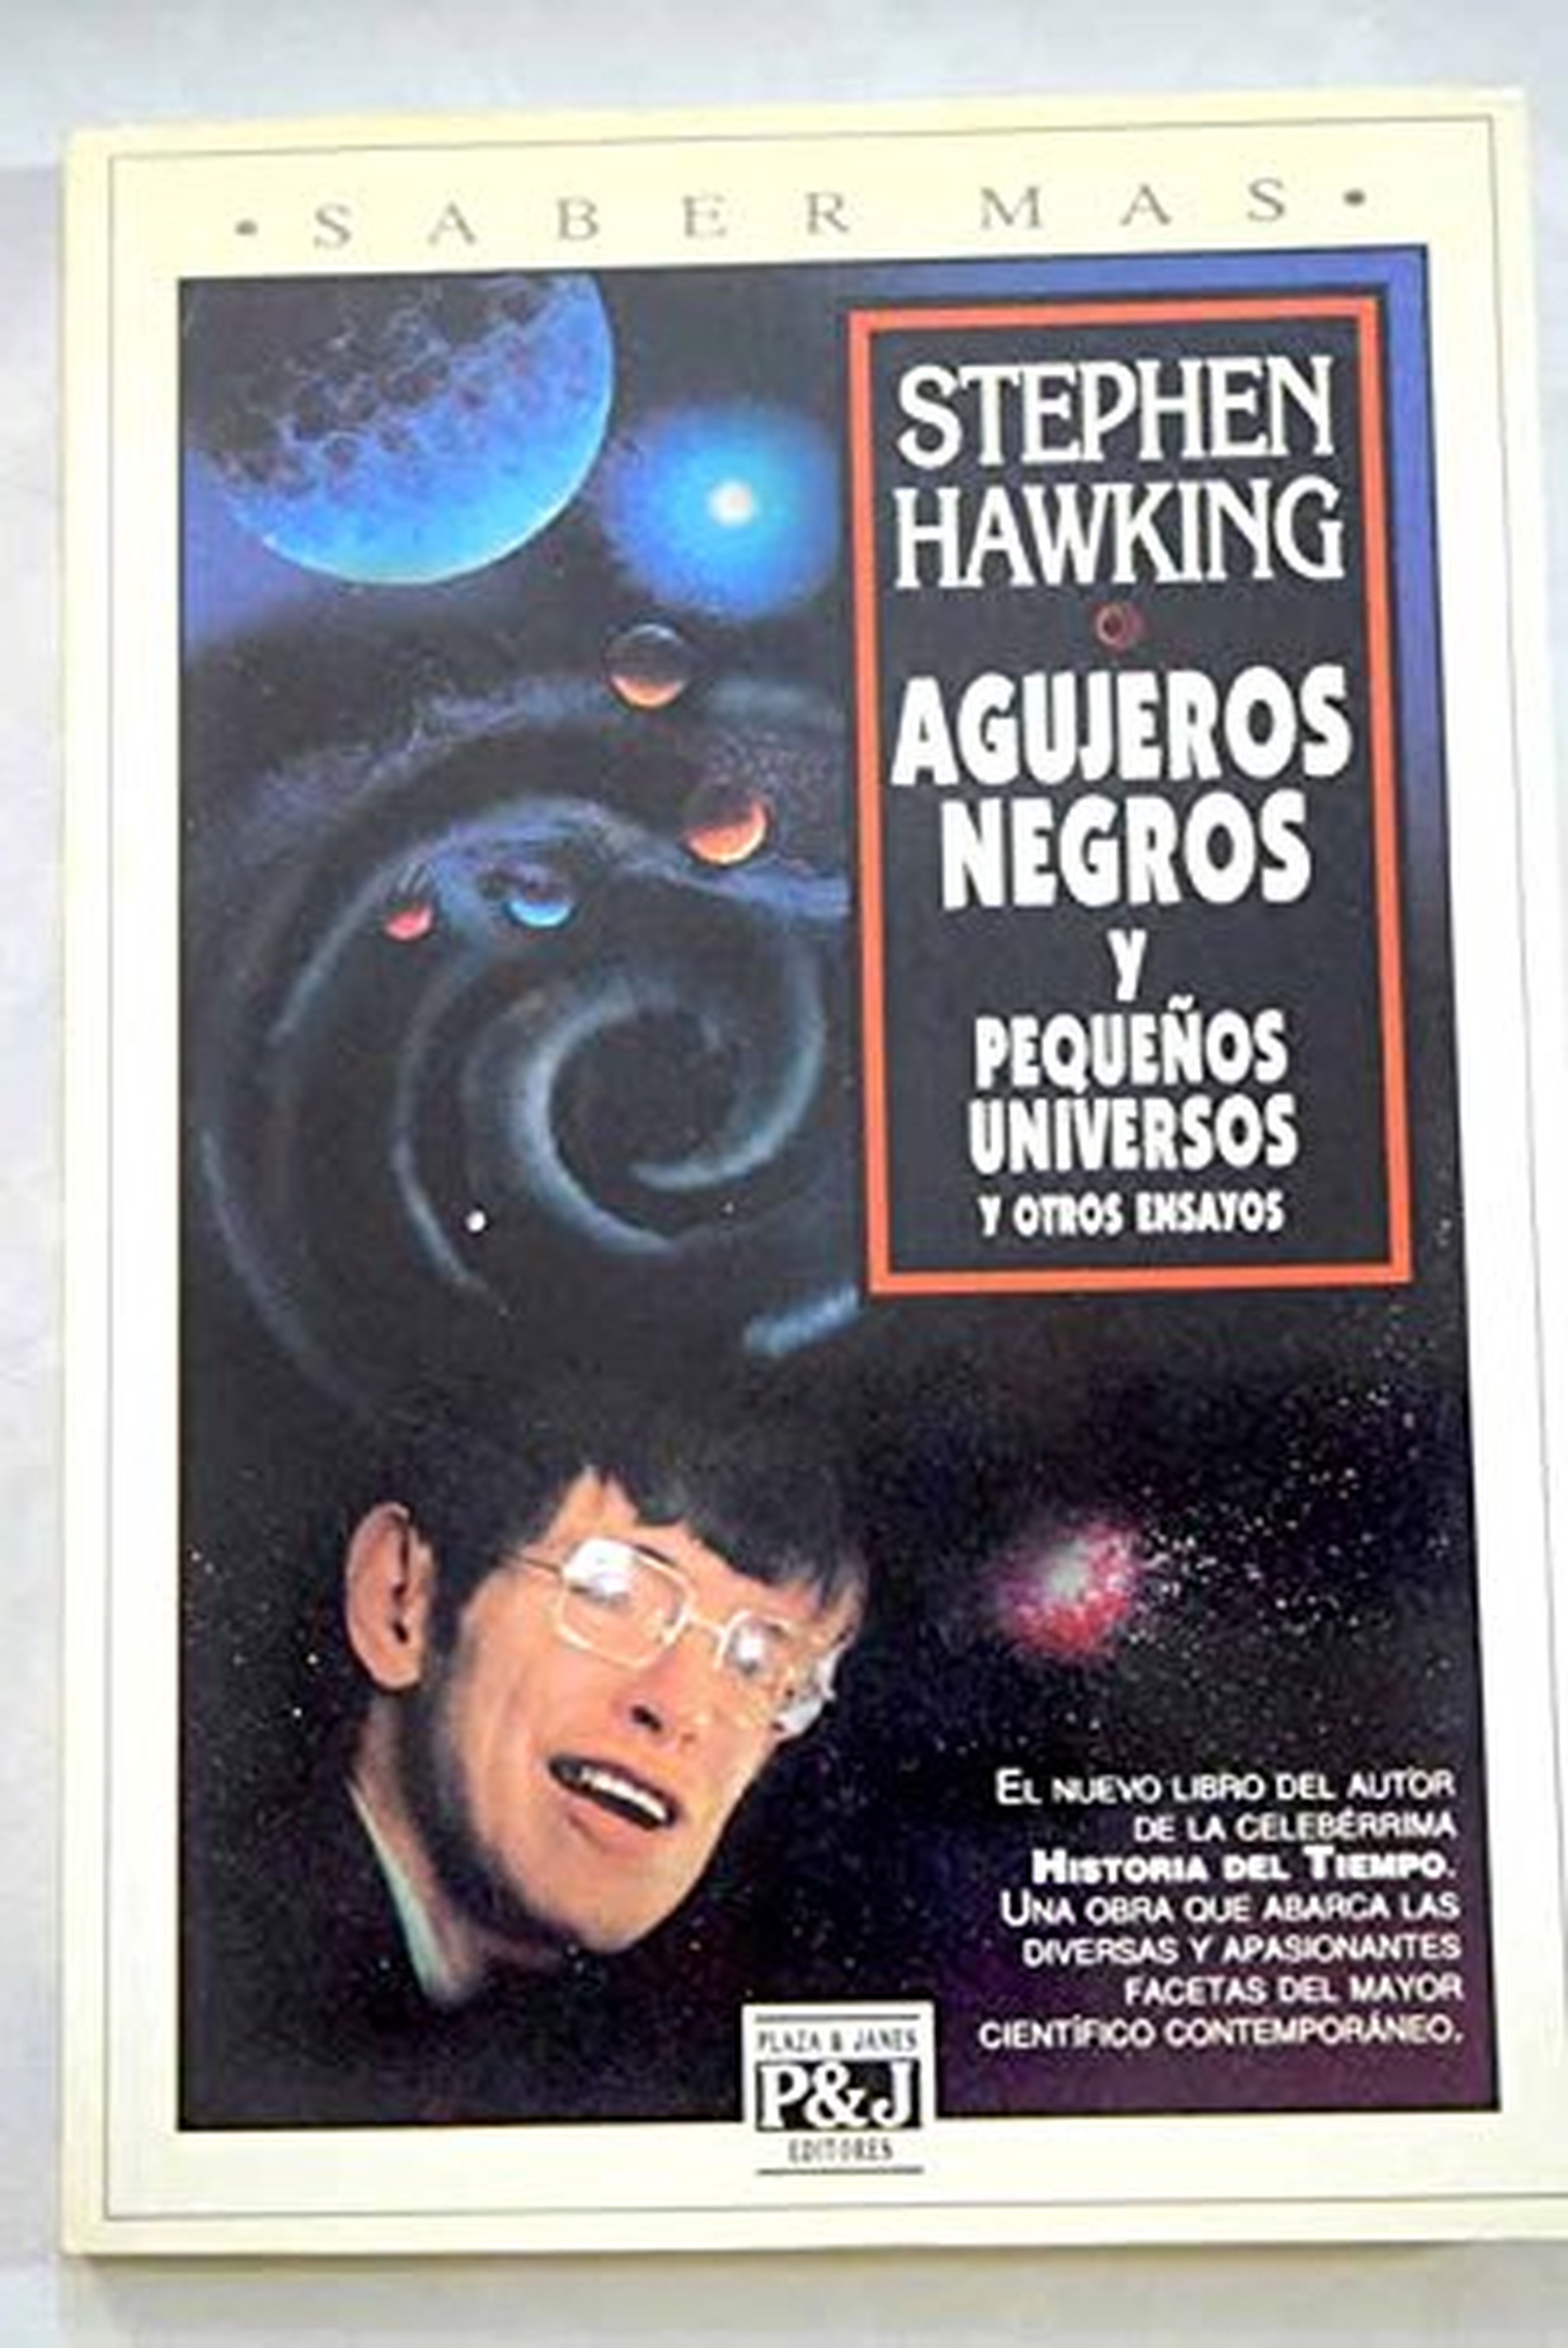 Bergantín ir de compras Pera Los 5 mejores libros escritos por Stephen Hawking | Business Insider España